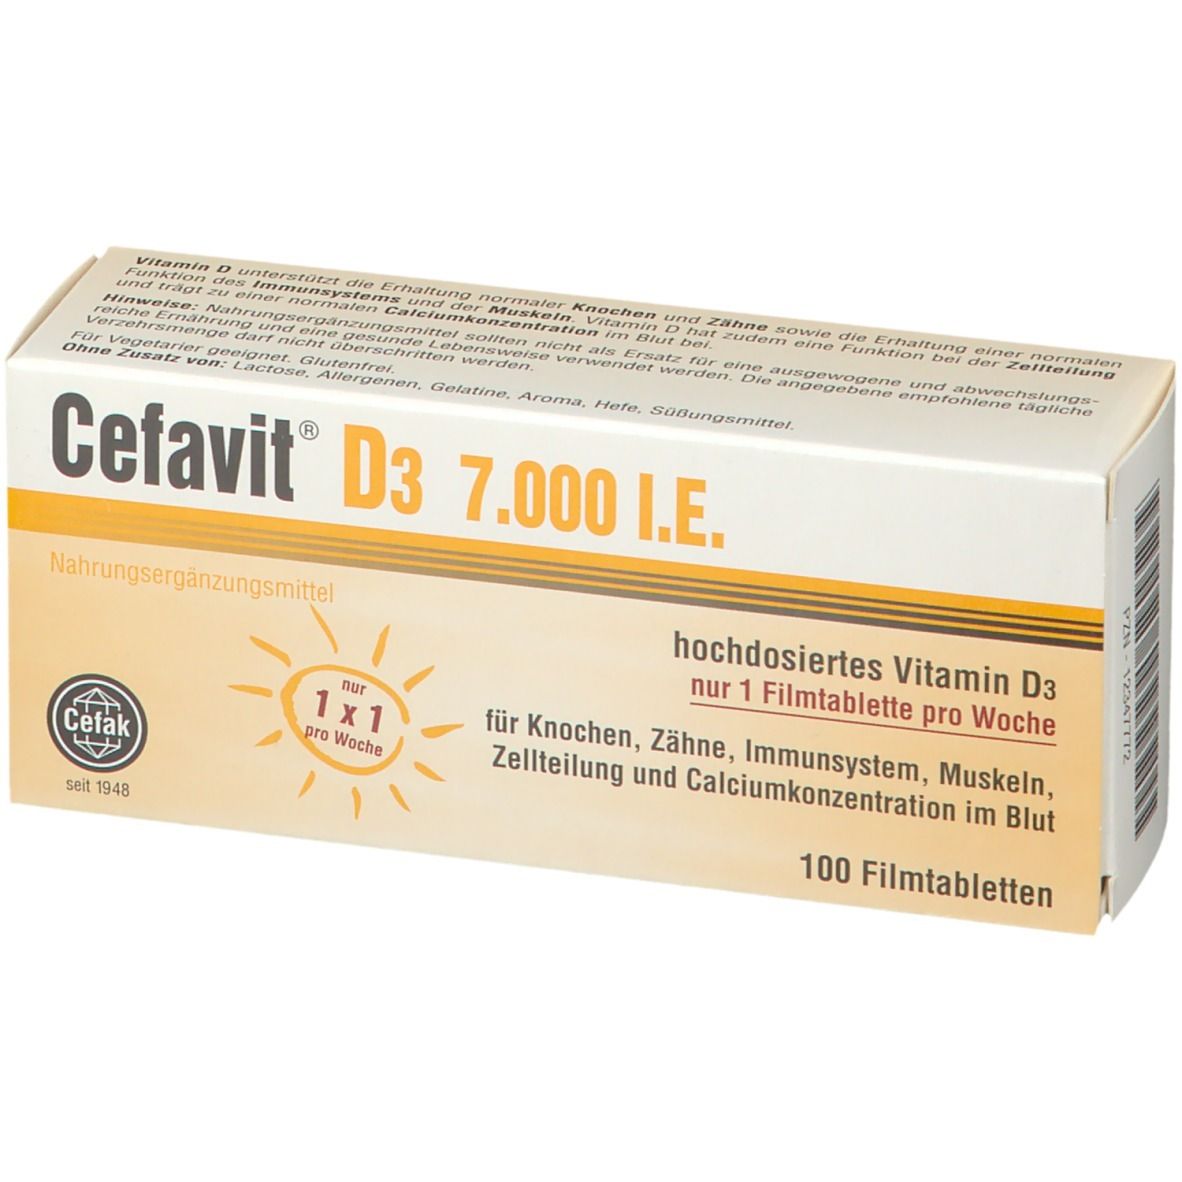 Cefavit® D3 7.000 I.E.